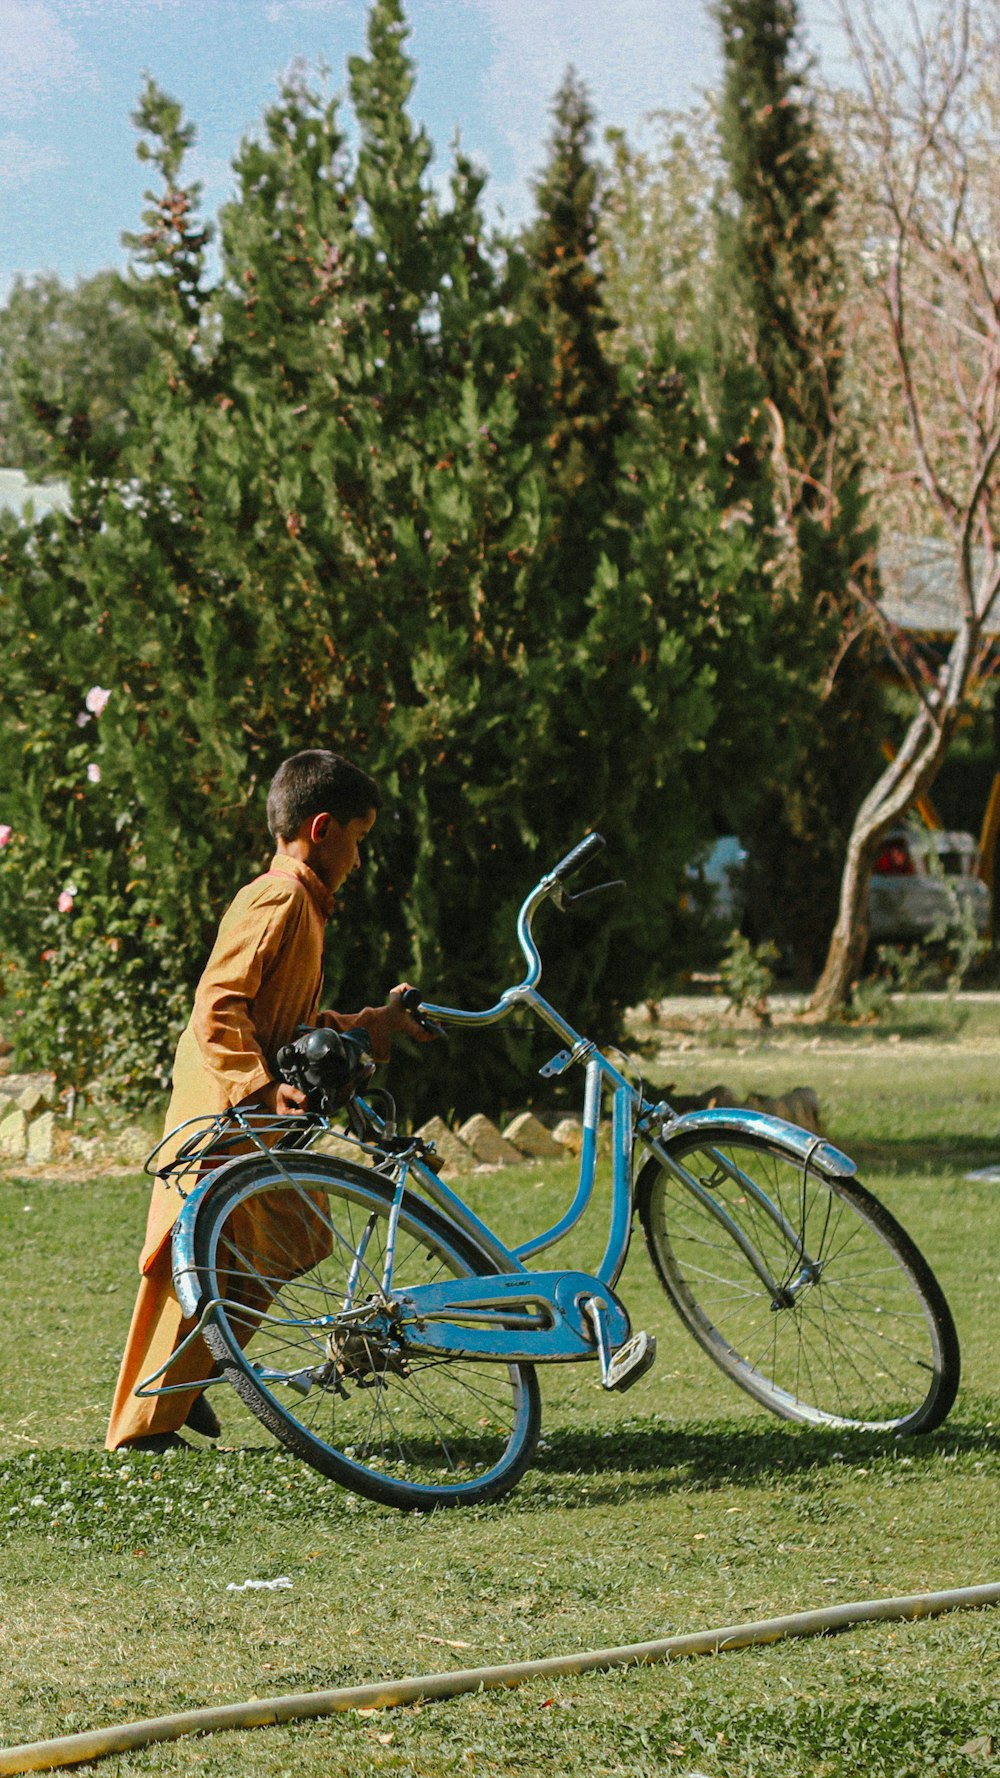 Ein Mann sitzt im Gras neben einem blauen Fahrrad